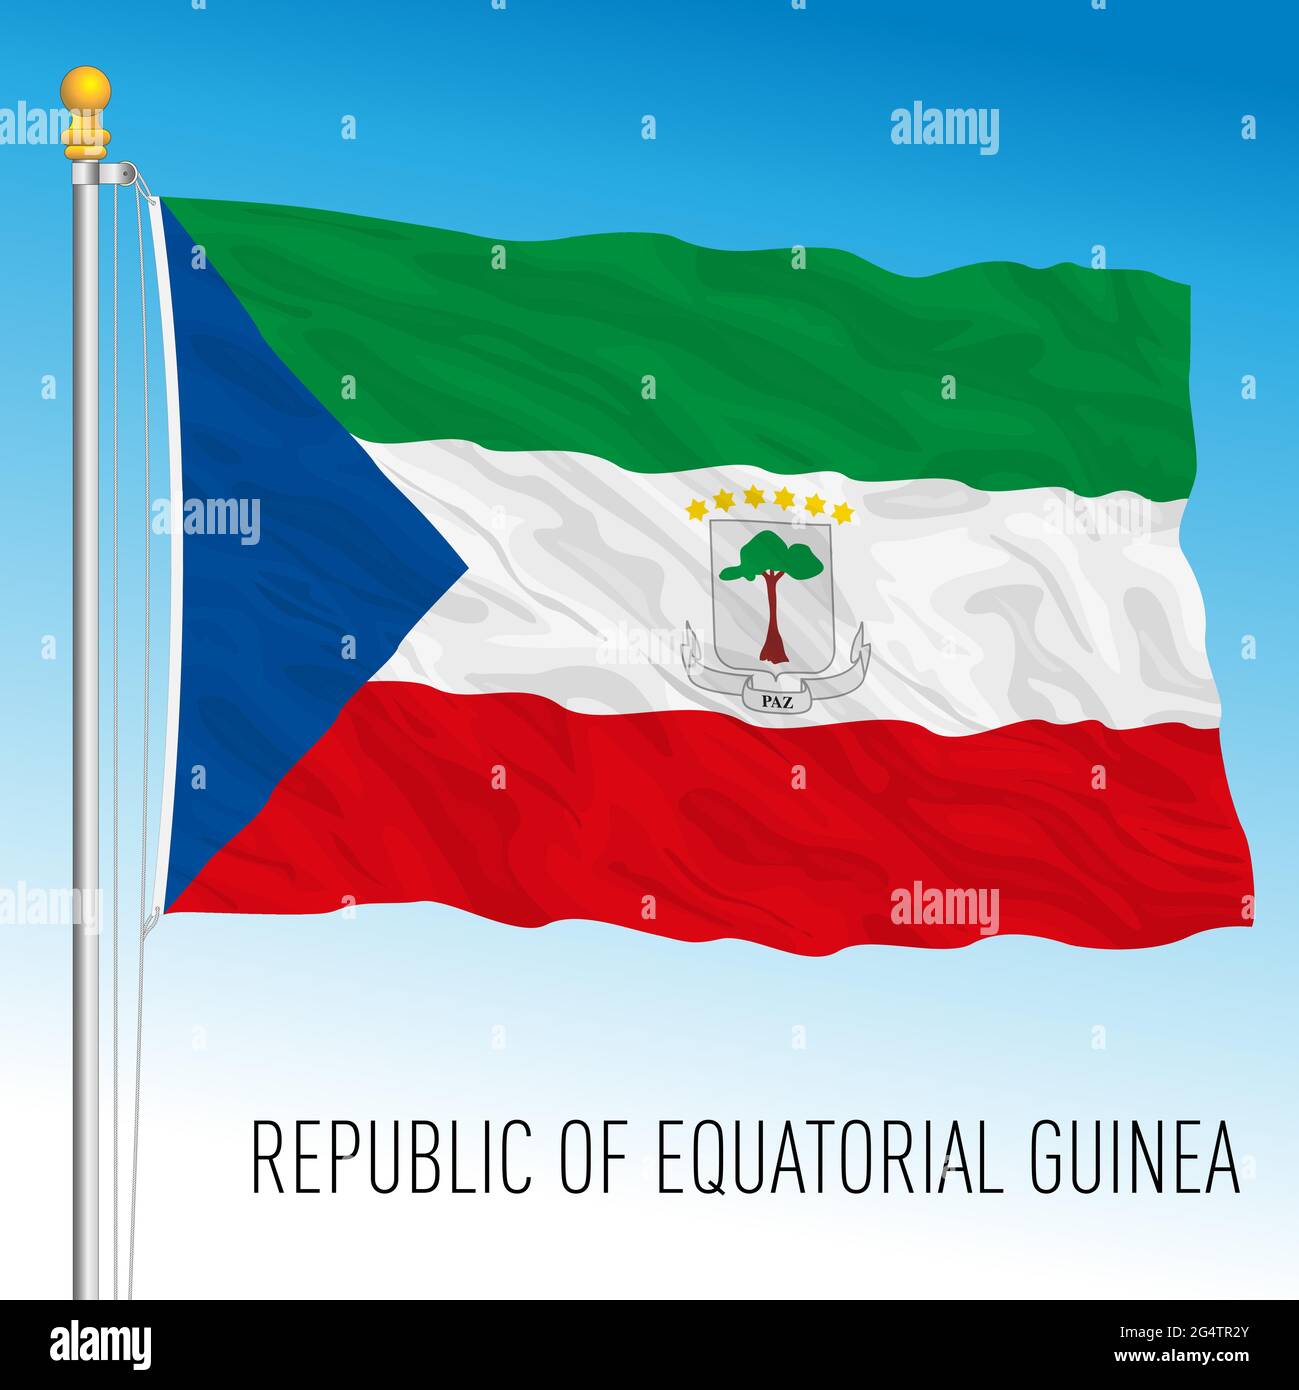 Drapeau national officiel de la Guinée équatoriale, pays africain, illustration vectorielle Illustration de Vecteur